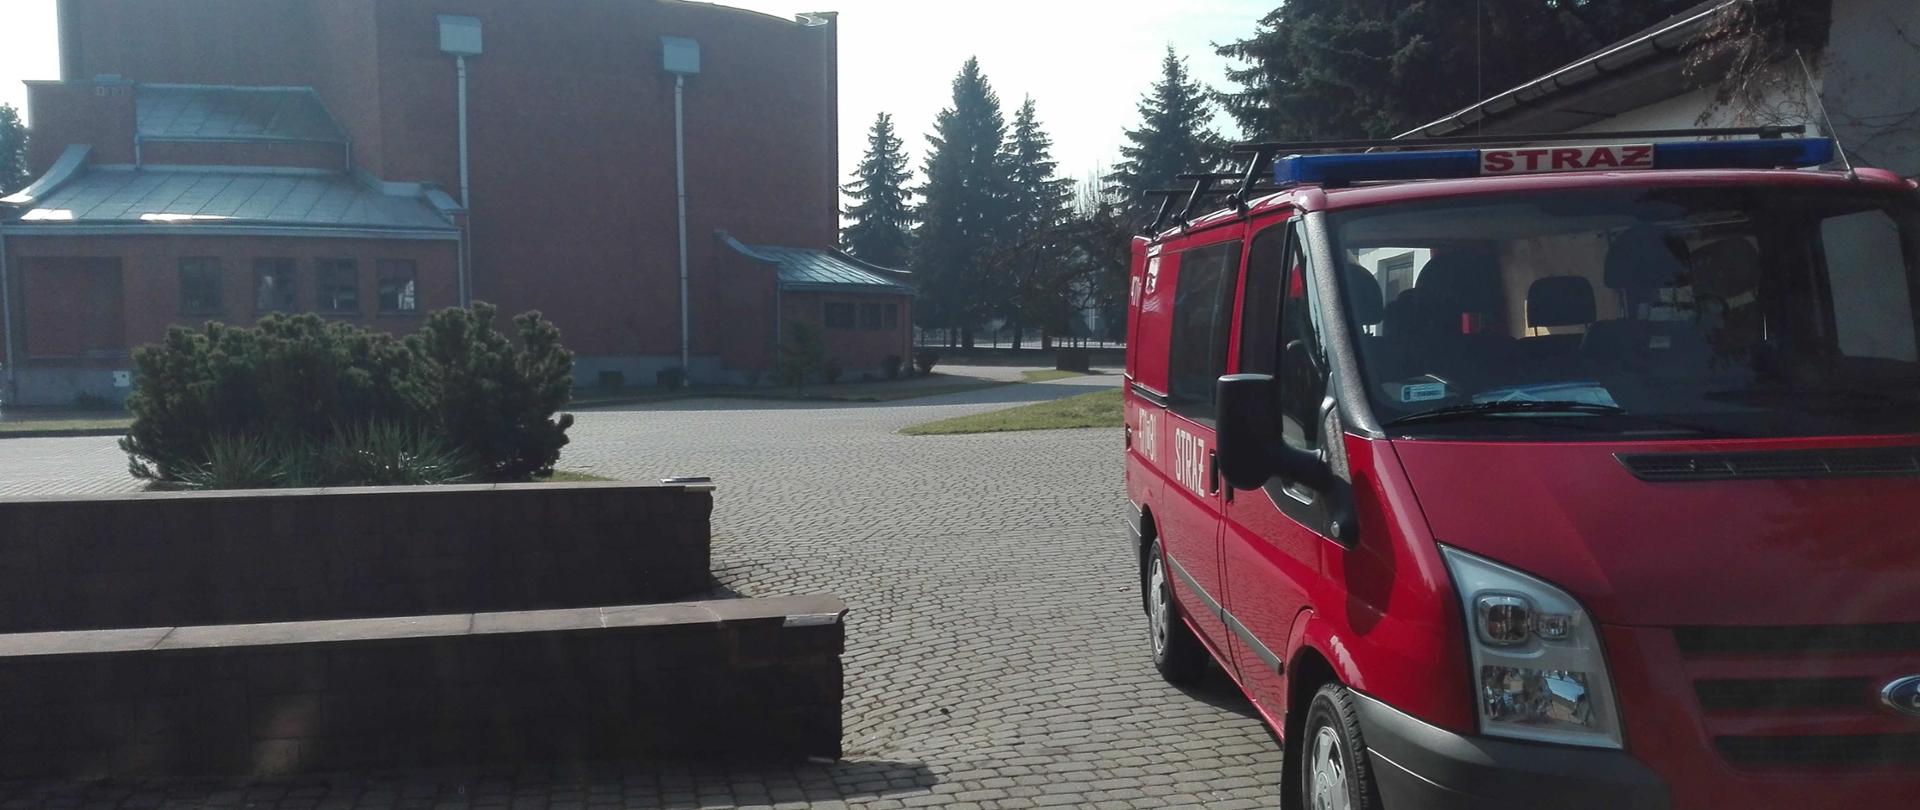 Zdjęcie przedstawia samochód strażacki, który stoi na placu obok kościoła. W tle widać murowany kościół.
